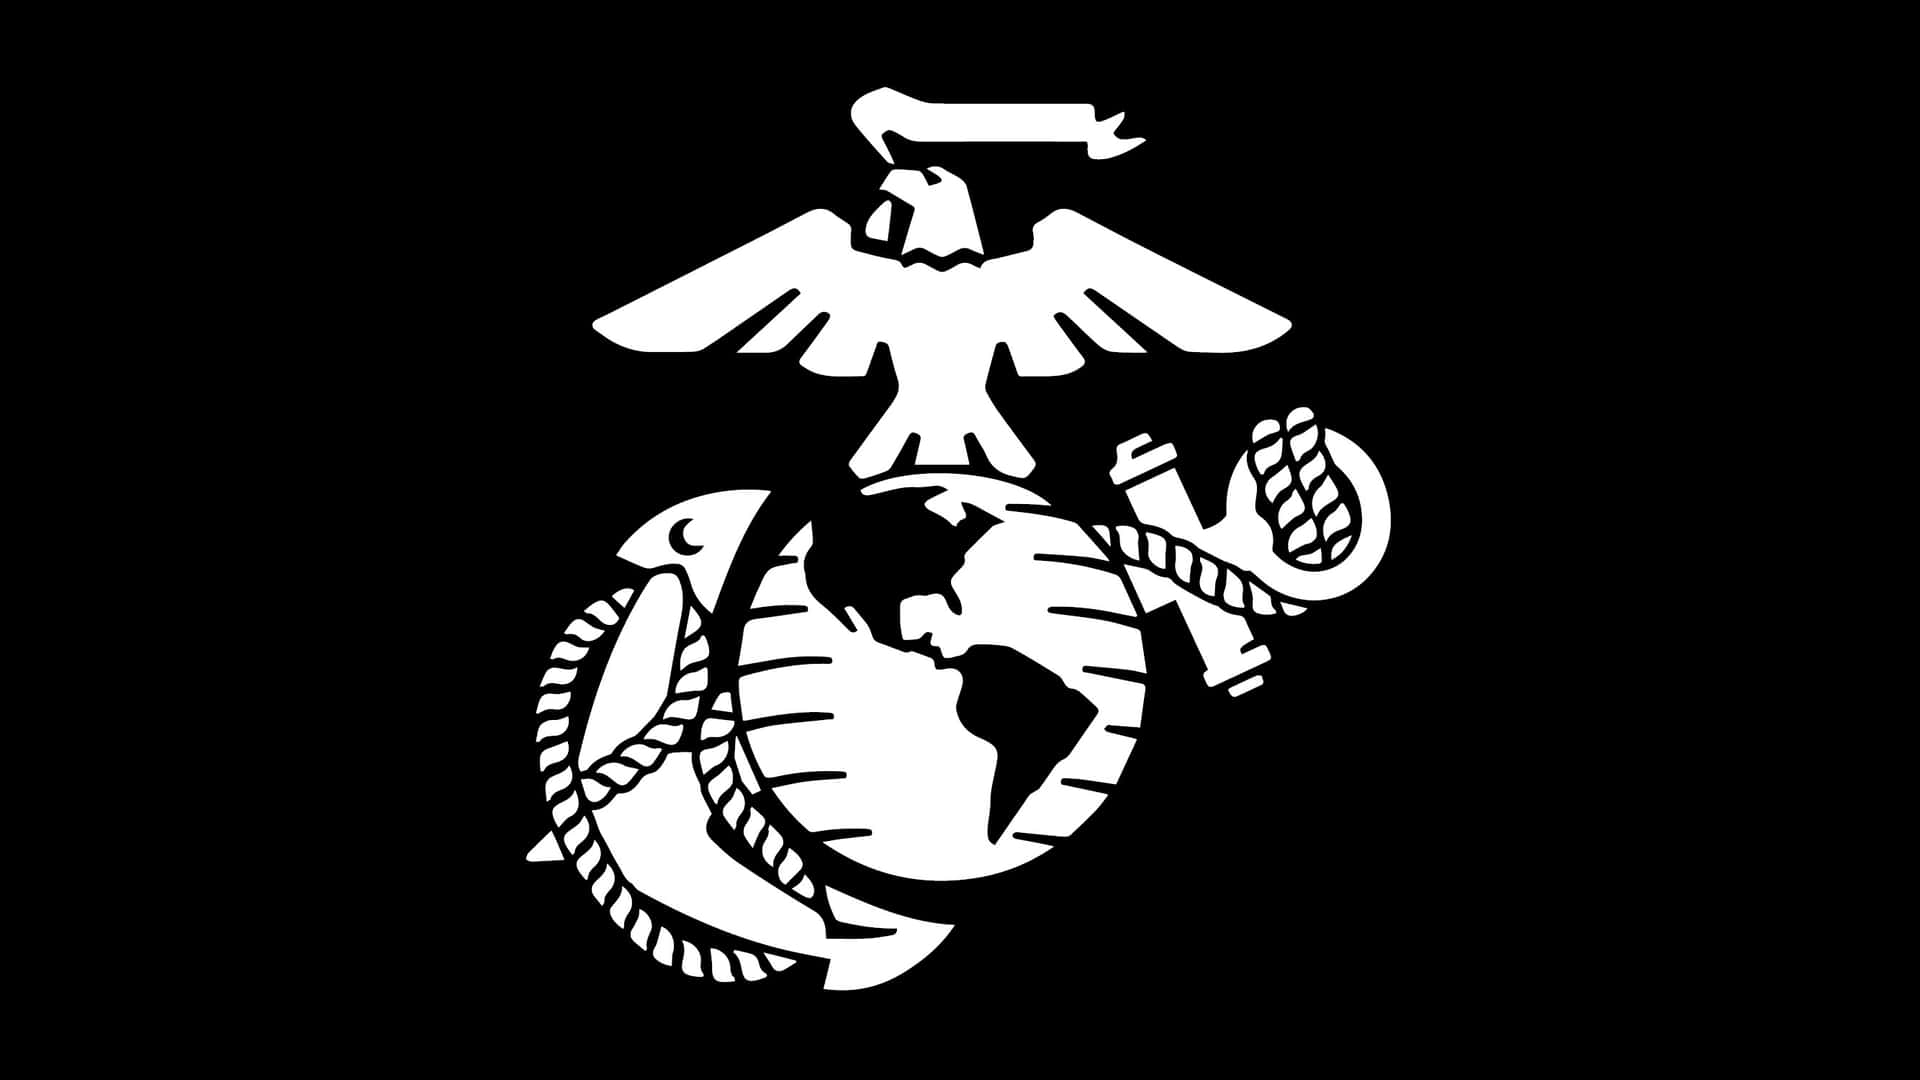 Emblemadel Cuerpo De Marines De Estados Unidos En Calcomanía. Fondo de pantalla